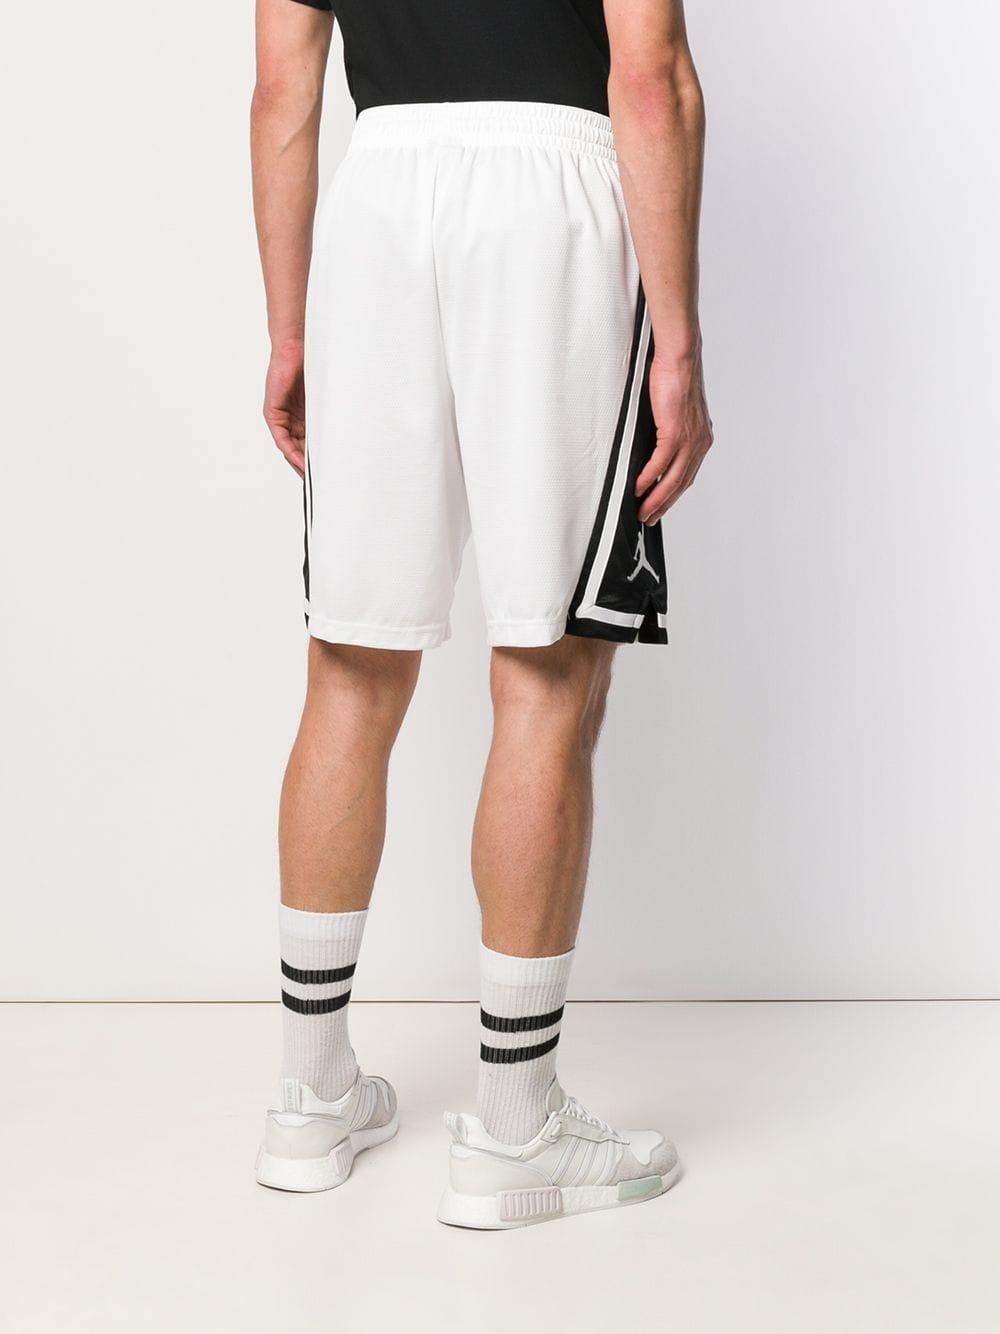 Nike Jordan Franchise Basketball Shorts in White for Men - Lyst